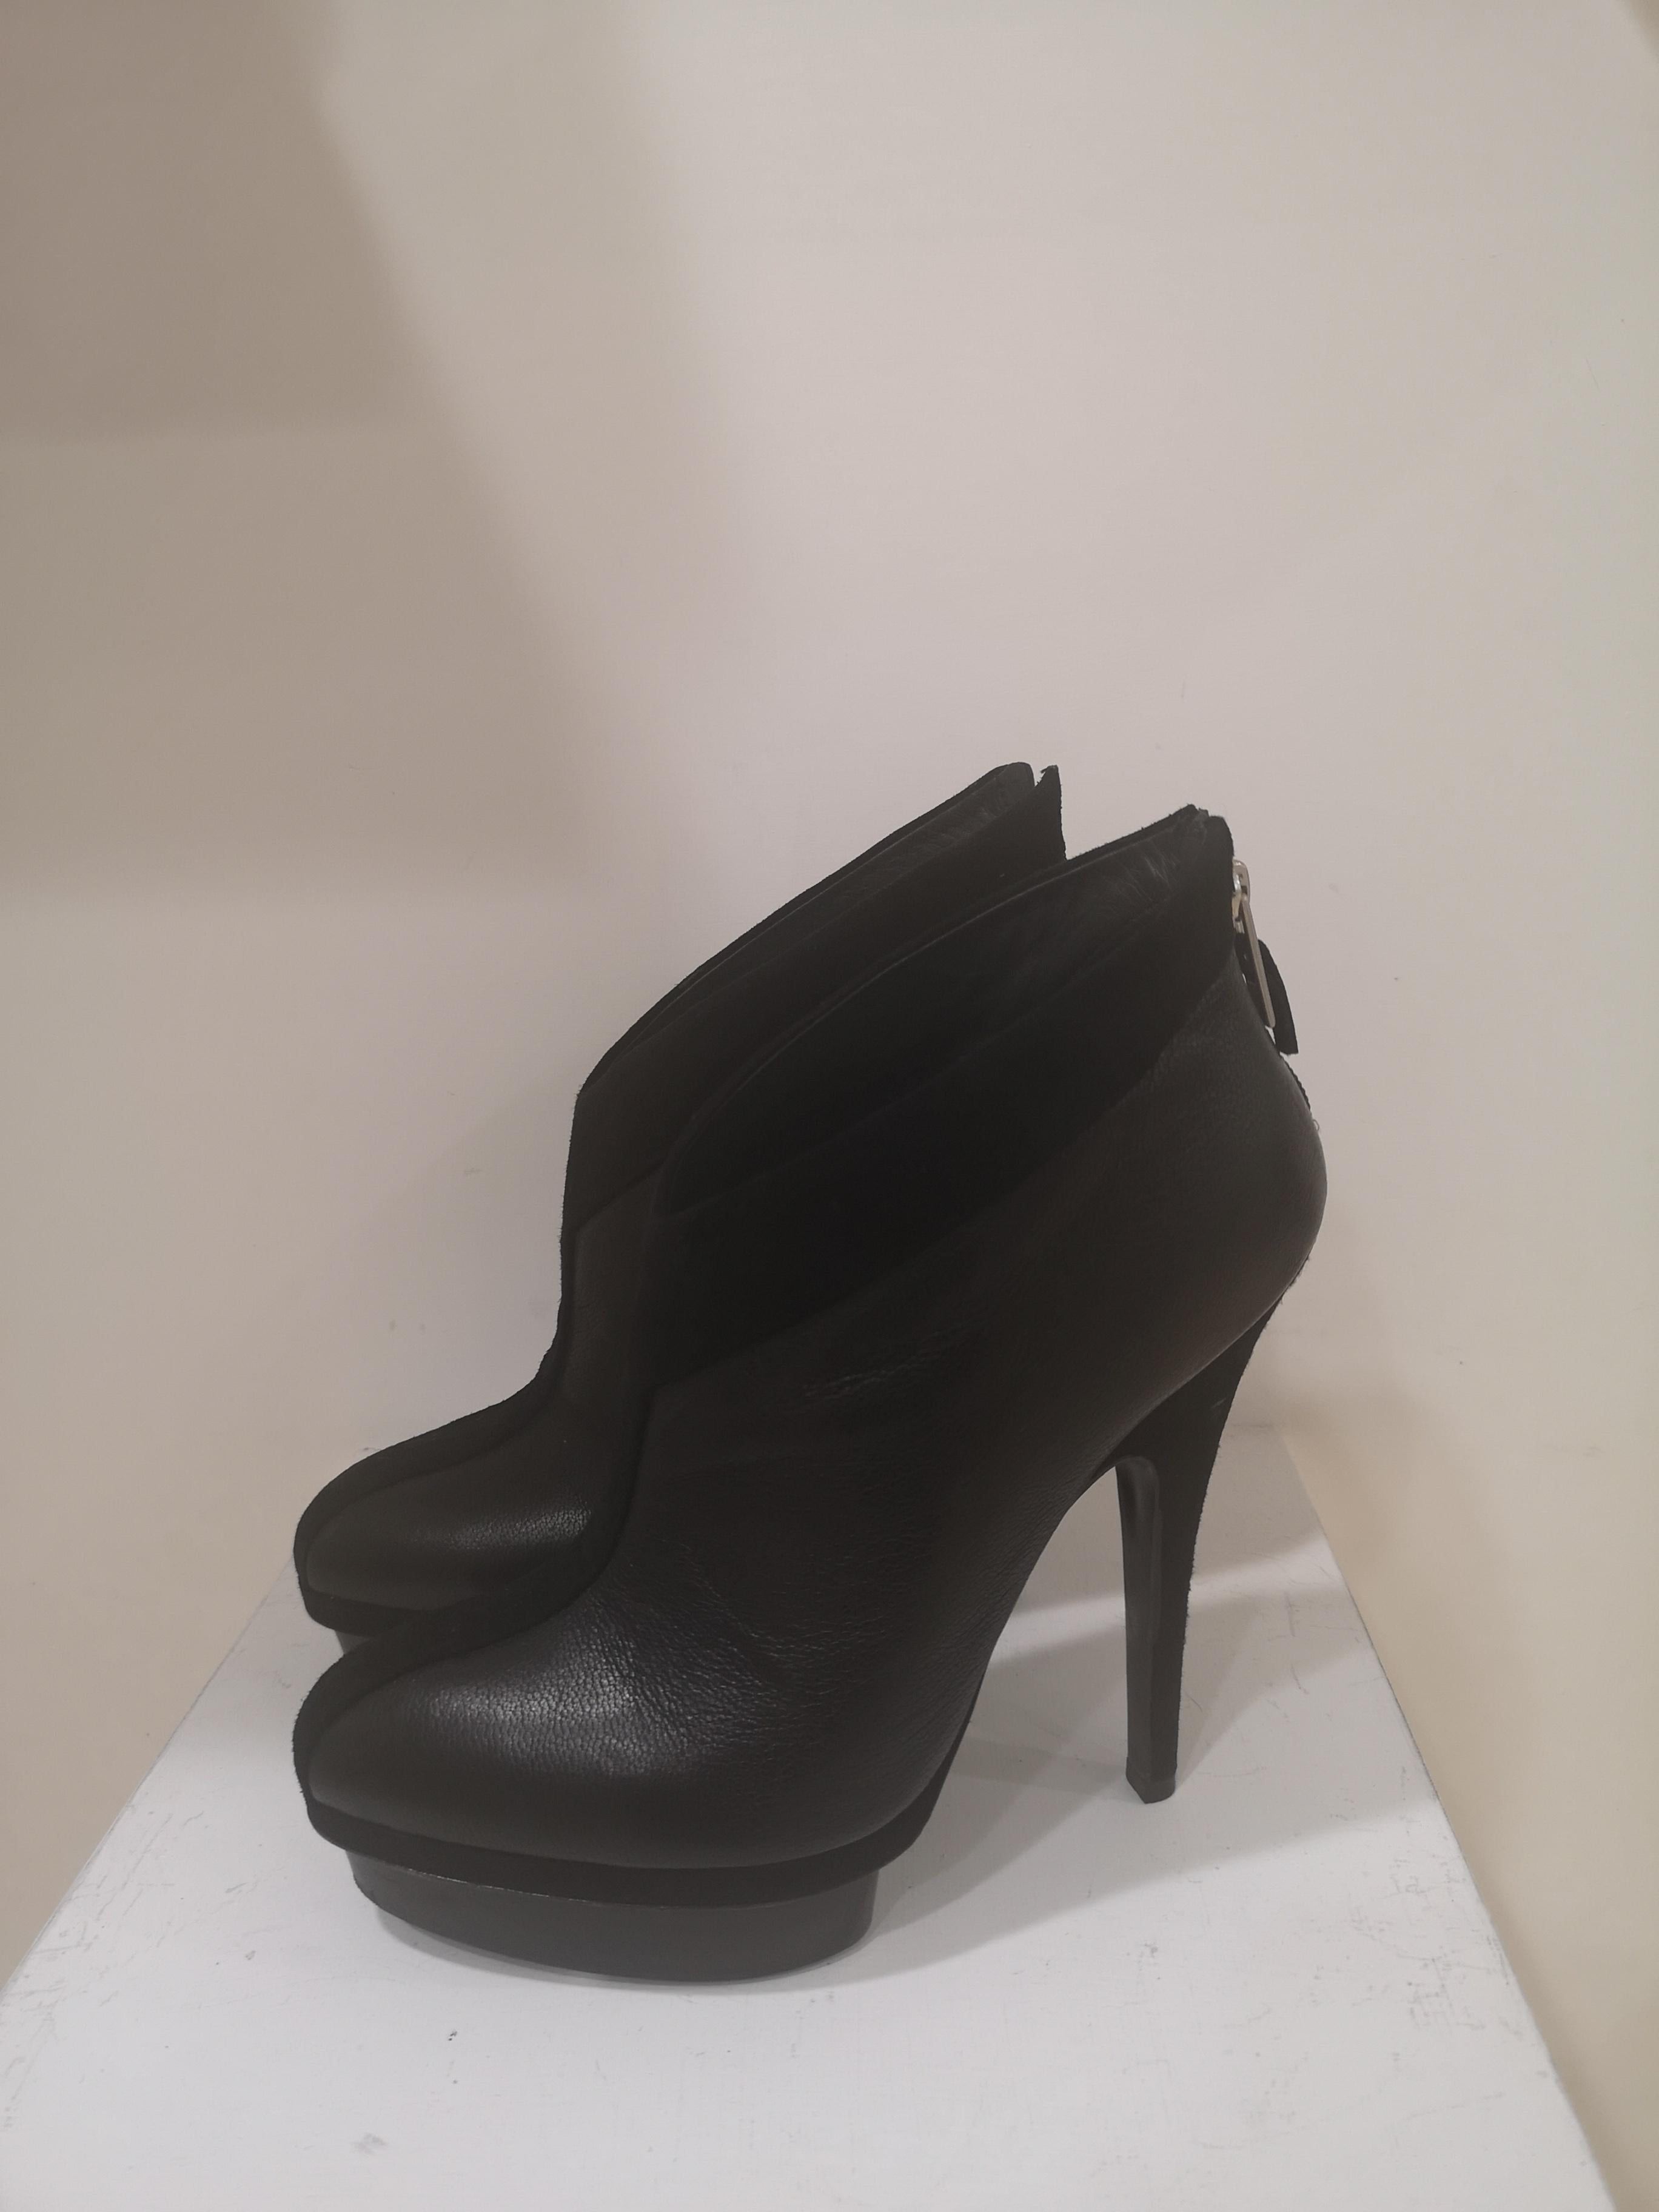 Yves Saint Laurent Black shoes For Sale 3